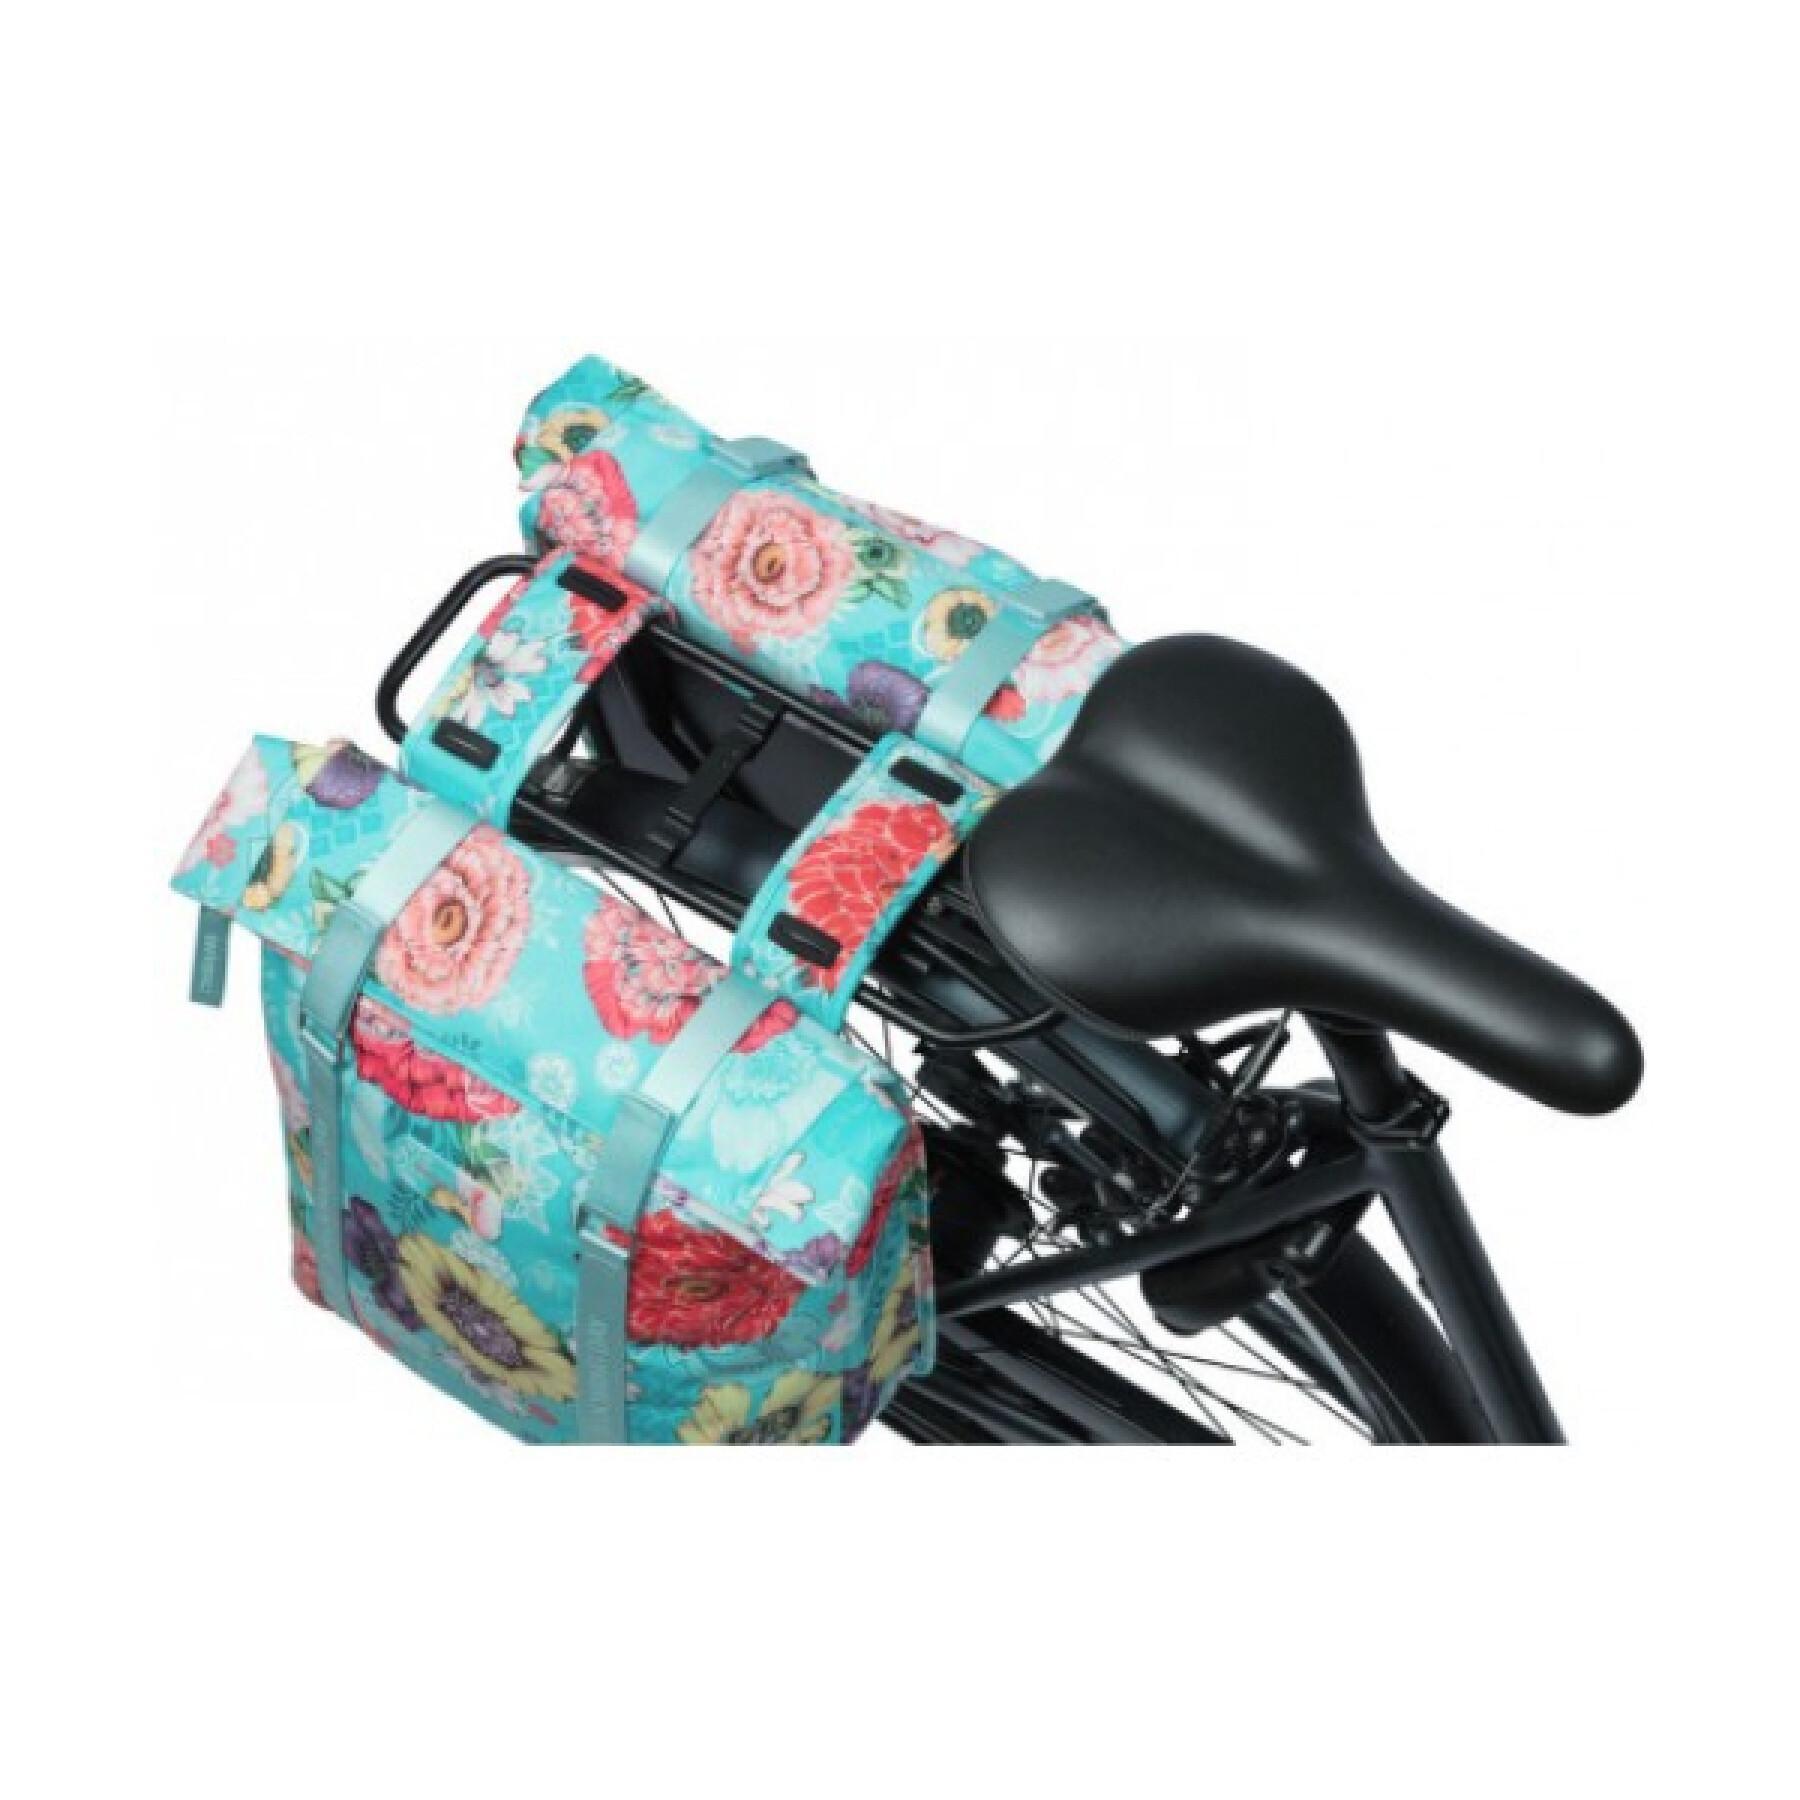 Wodoodporna torba na bagażnik rowerowy z poliestru z materiałem odblaskowym Basil bloom field